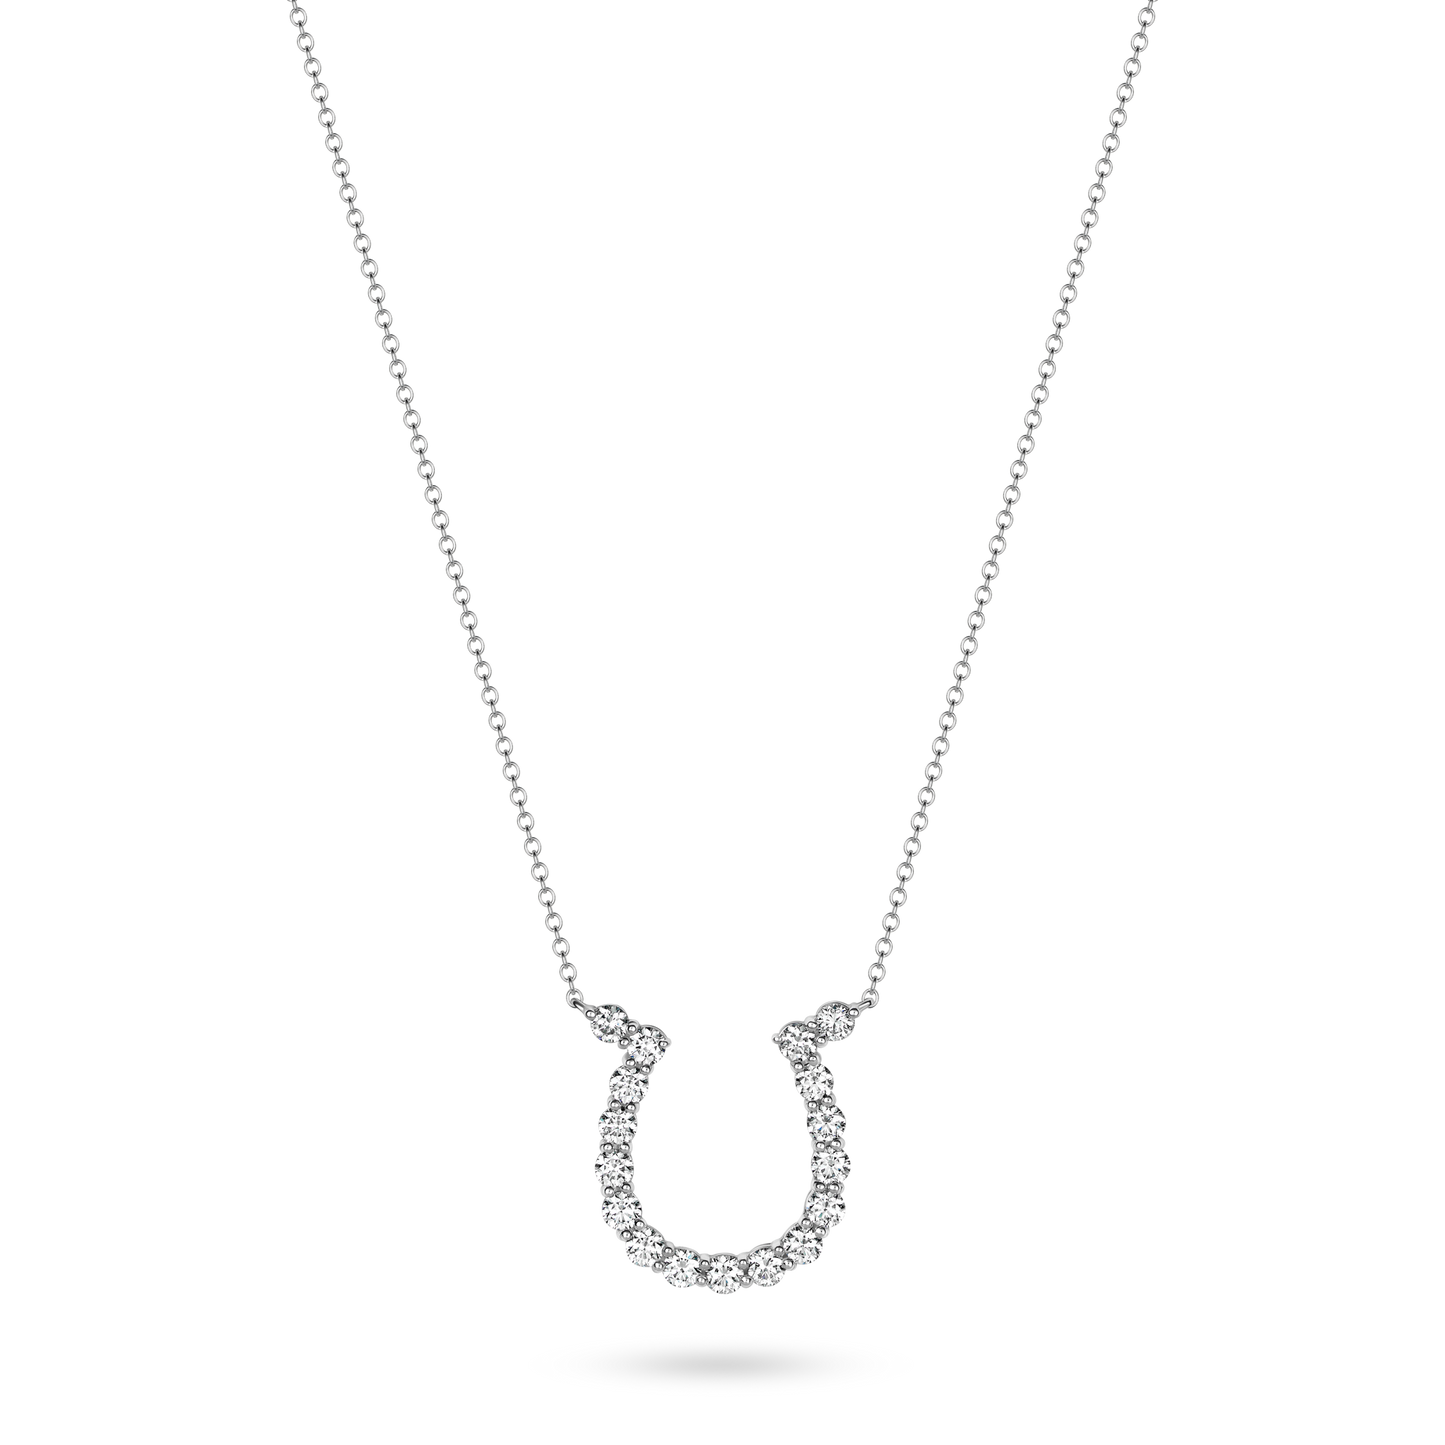 Karina Brez Large Diamond Lucky Horseshoe Necklace